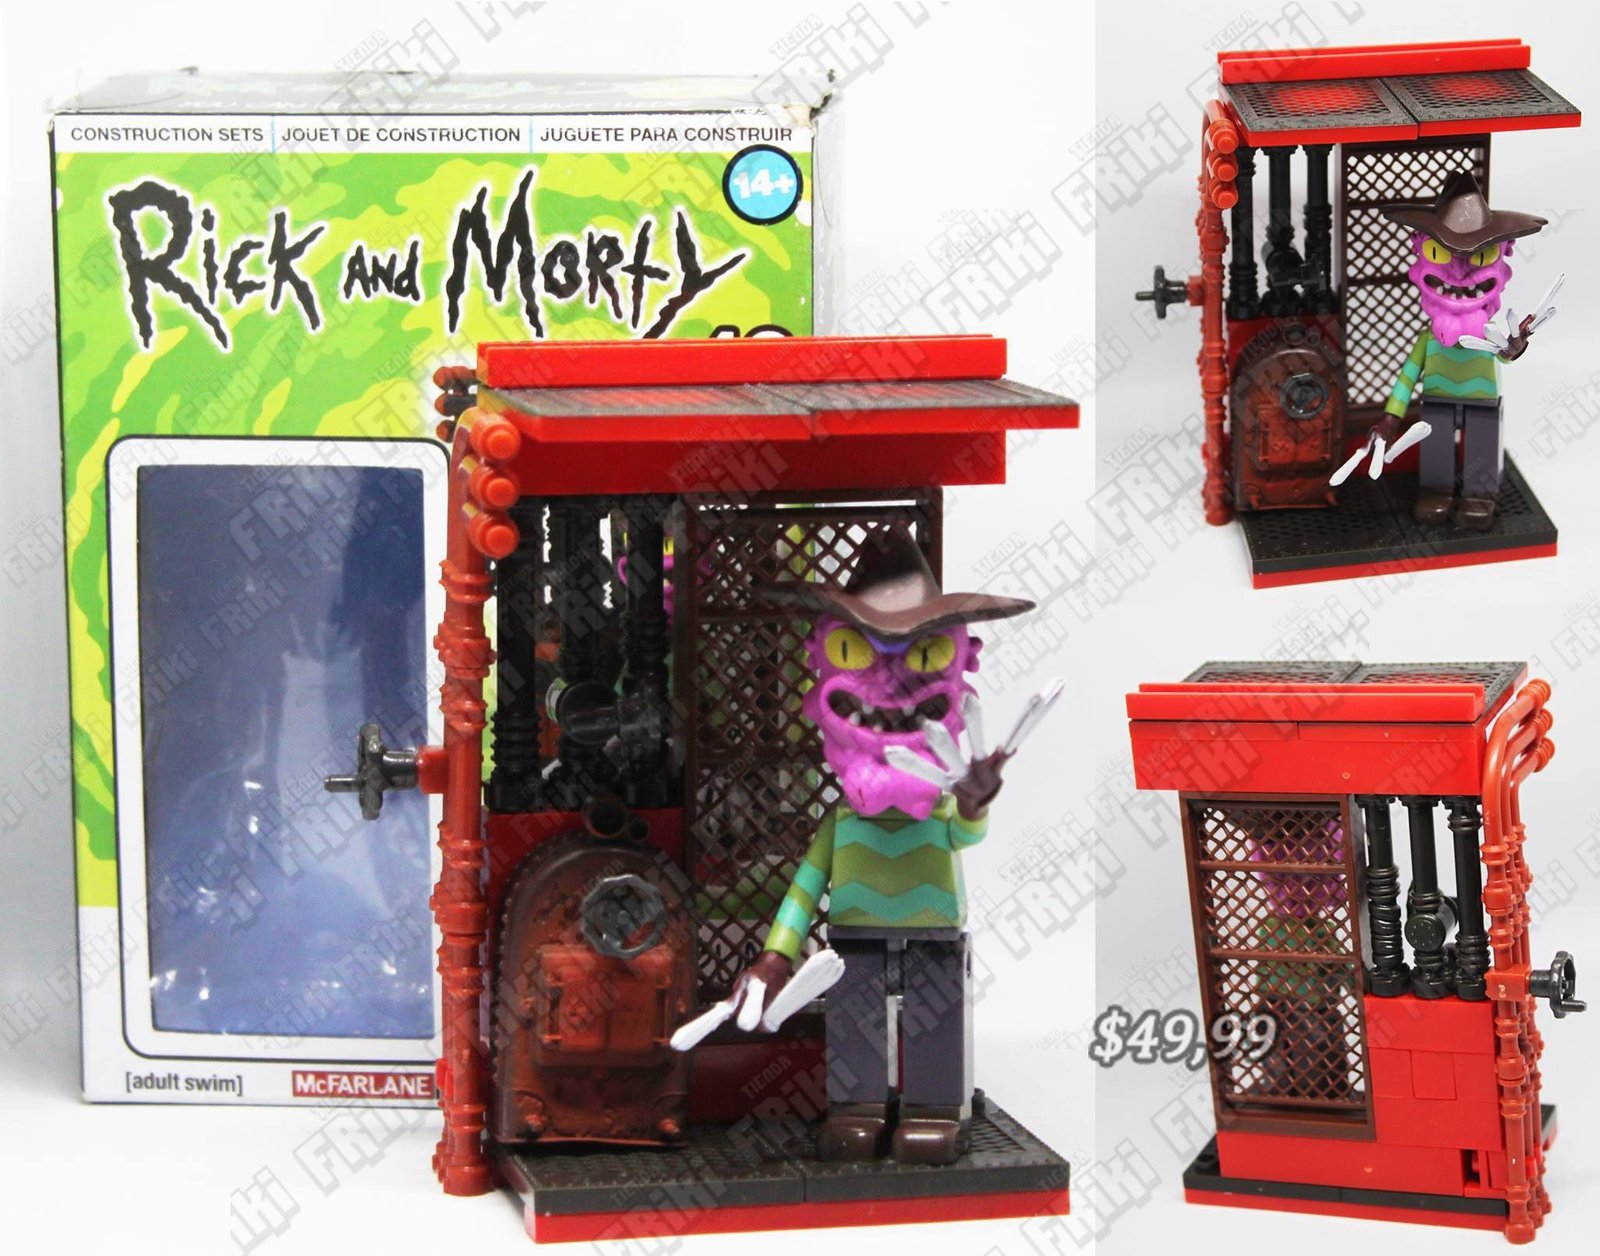 Lego Series Rick y Morty "Scary Terry" Ecuador Comprar Venden, Bonita Apariencia perfecta para coleccionistas y fans de la serie, practica, Hermoso material de plástico Color como en la foto Estado nuevo